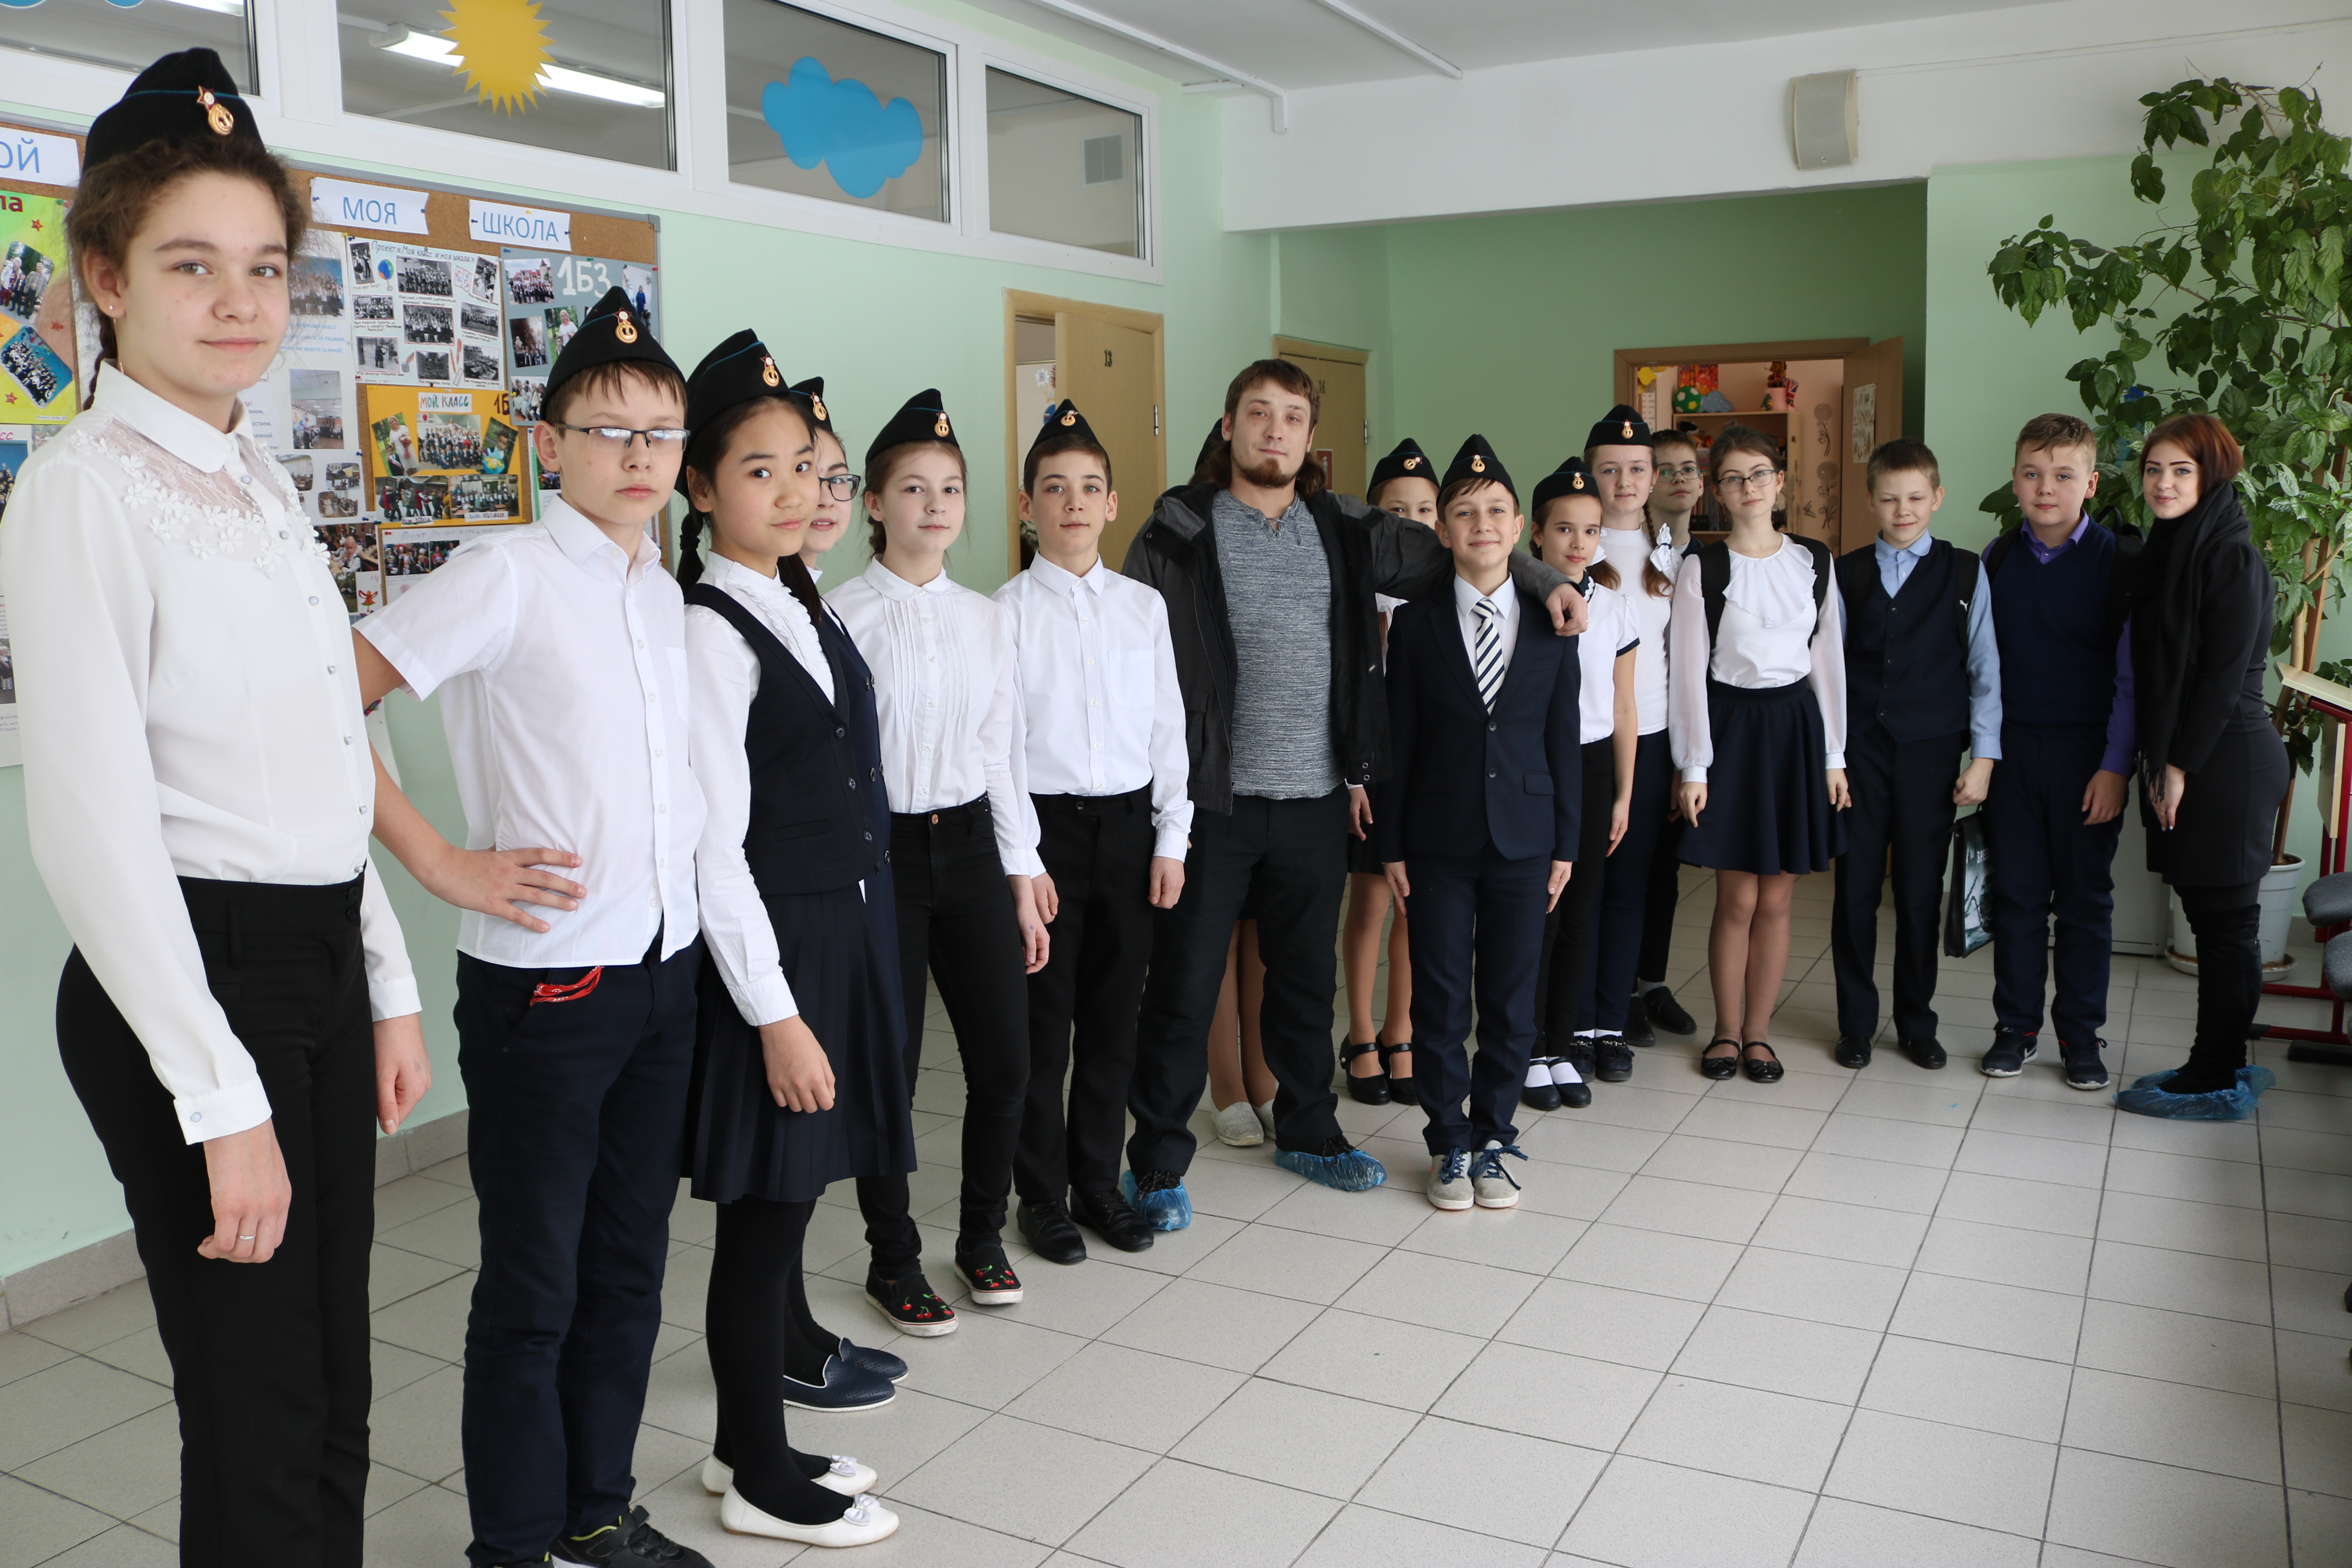 Молодежная палата и ученики ОП "Знамя Октября" продемонстрировали свои умения